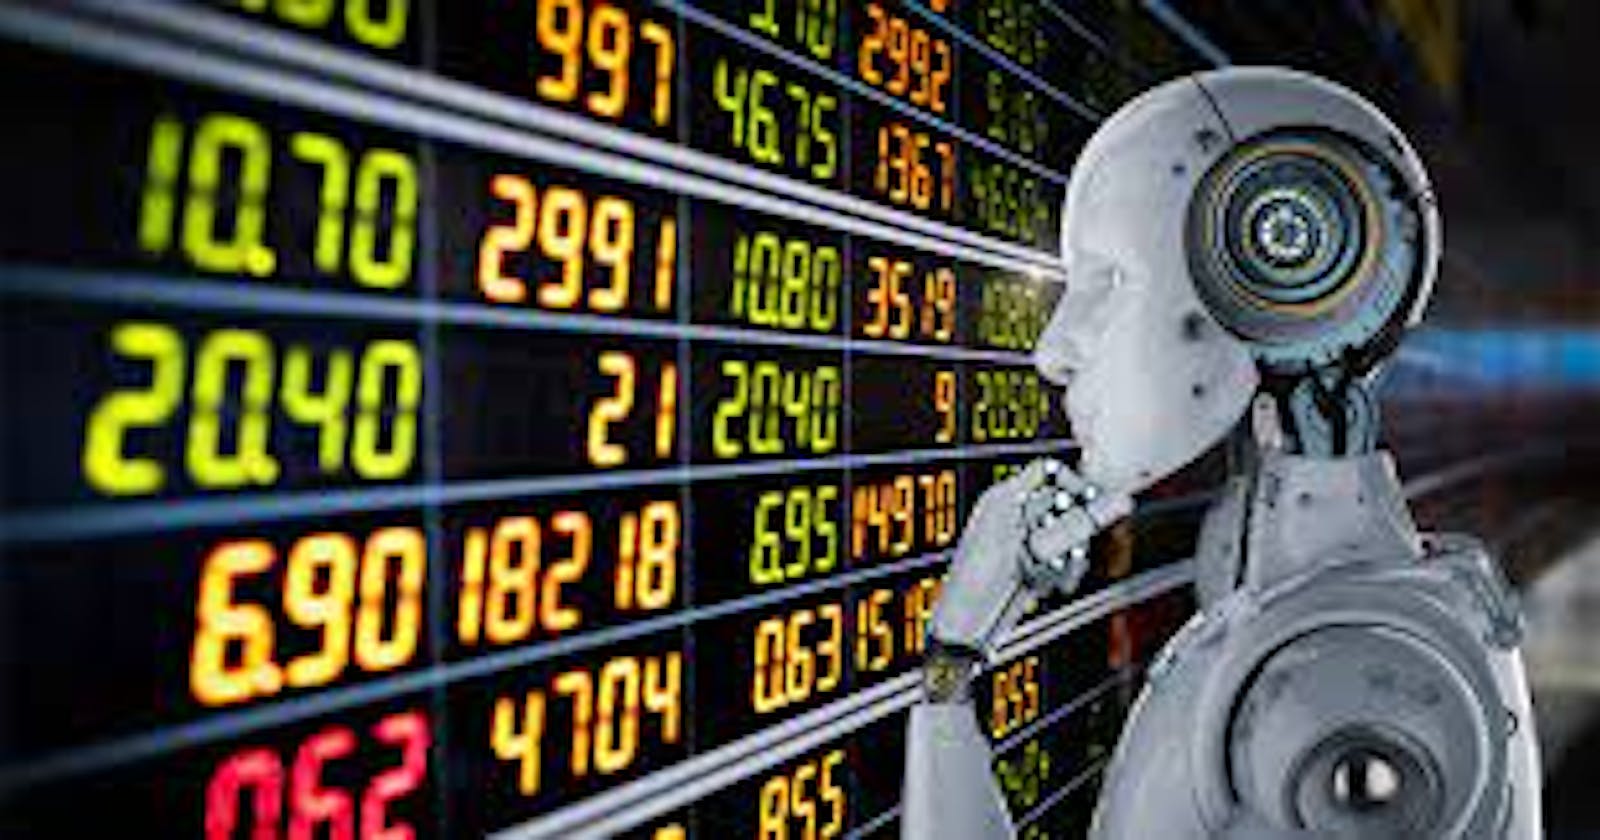 Hey-Hi: Artificial Intelligence in Finance